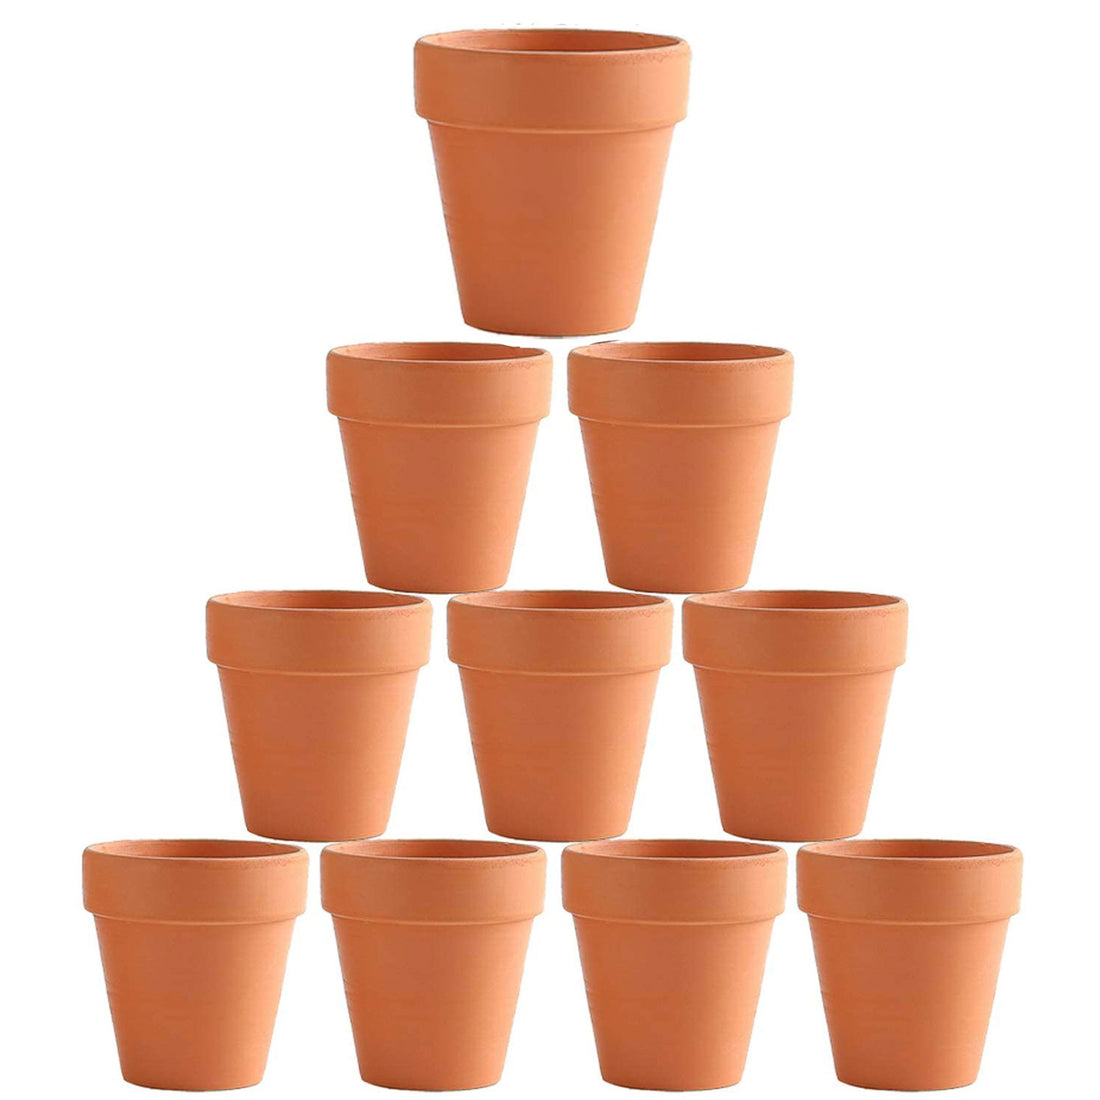 set of 10 garden pots in australia